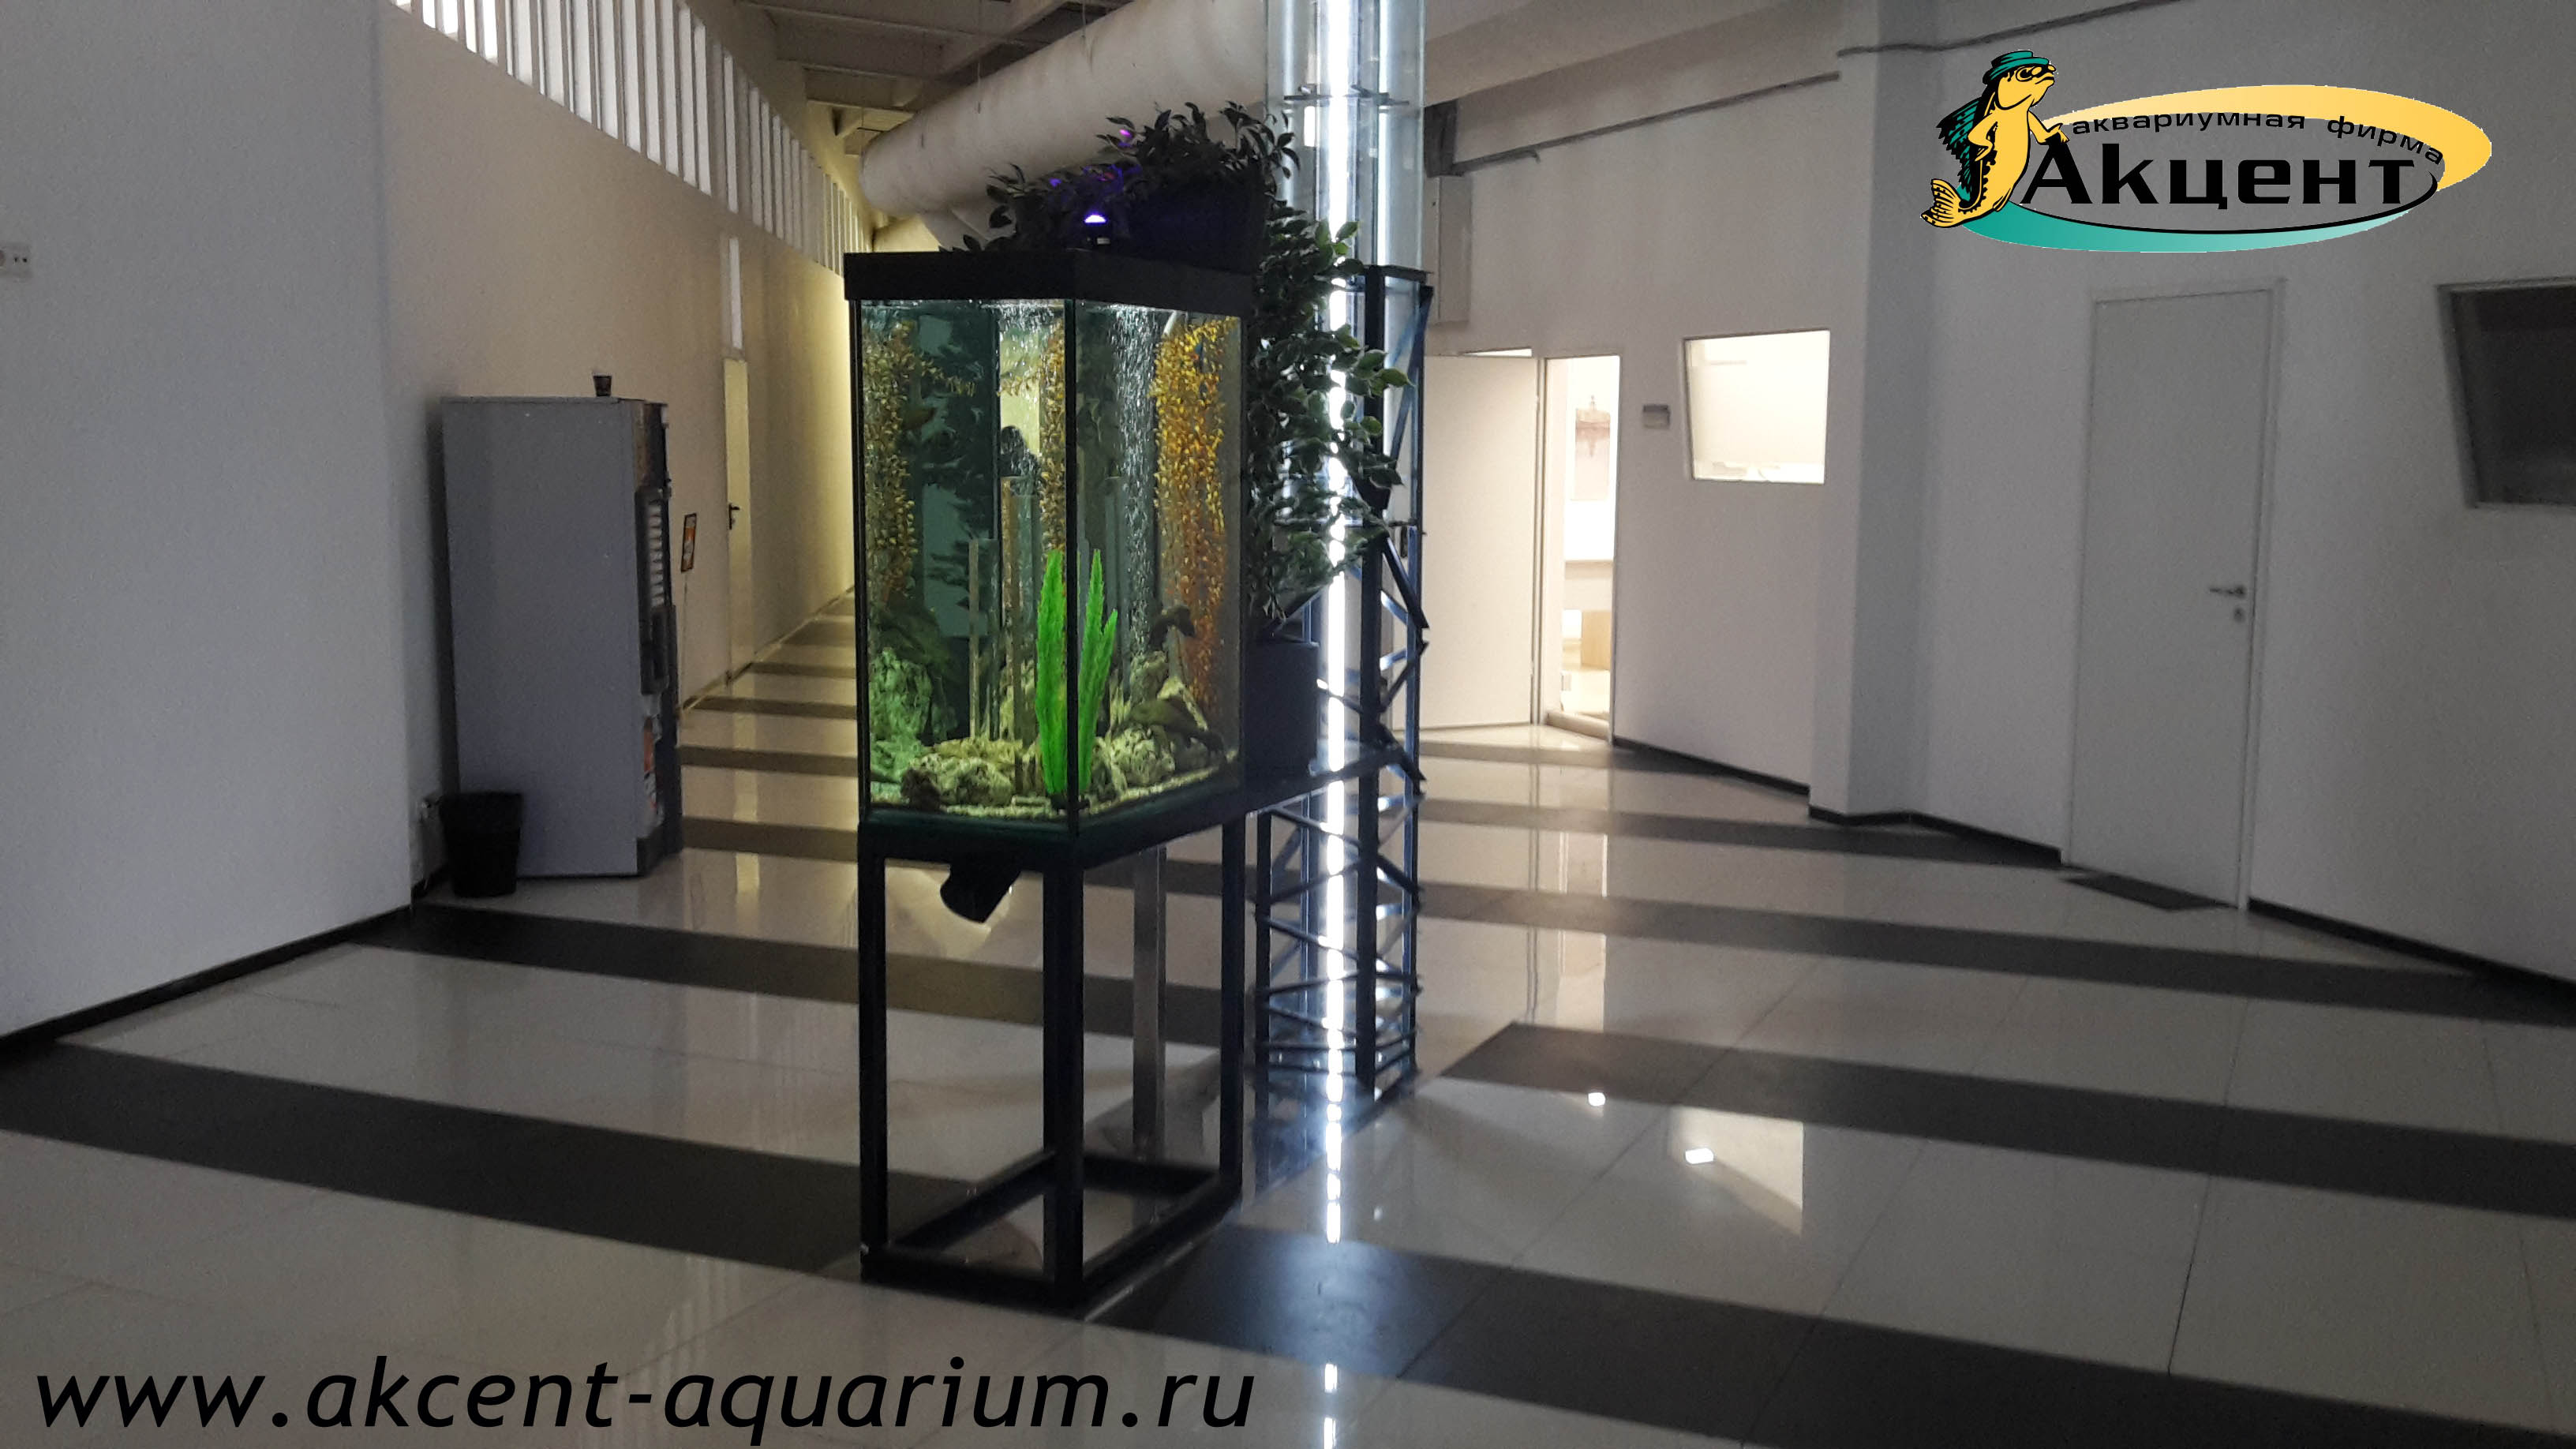 Акцент-аквариум, аквариум 300 литров просмотровый со всех сторон